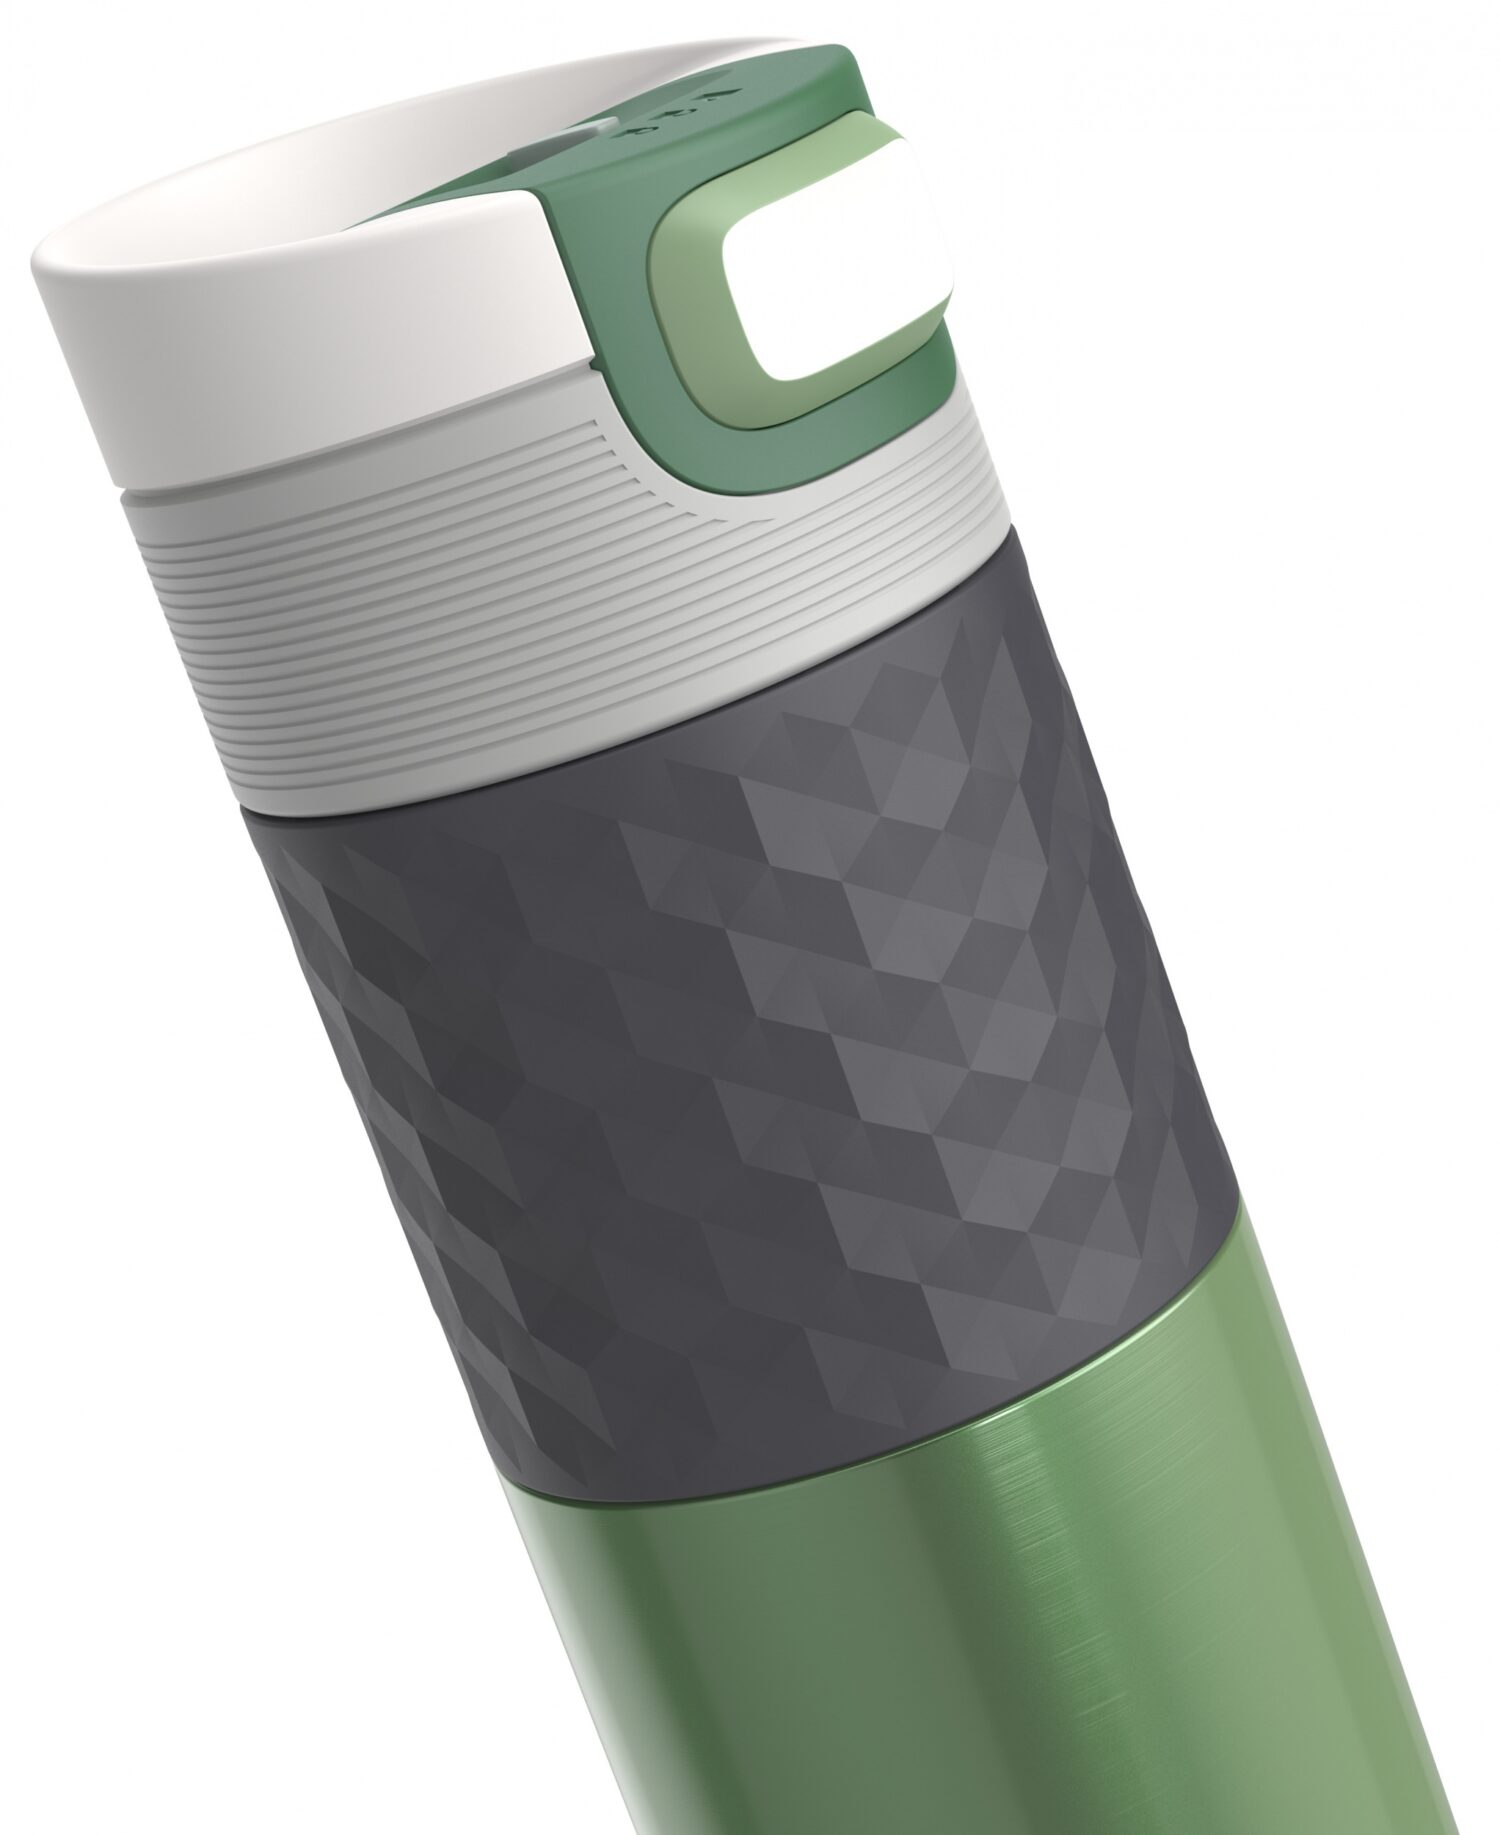 בקבוק שתיה תרמי ירוק 500 מ"ל Sea Green קמבוקה￼ Kambukka Etna Grip